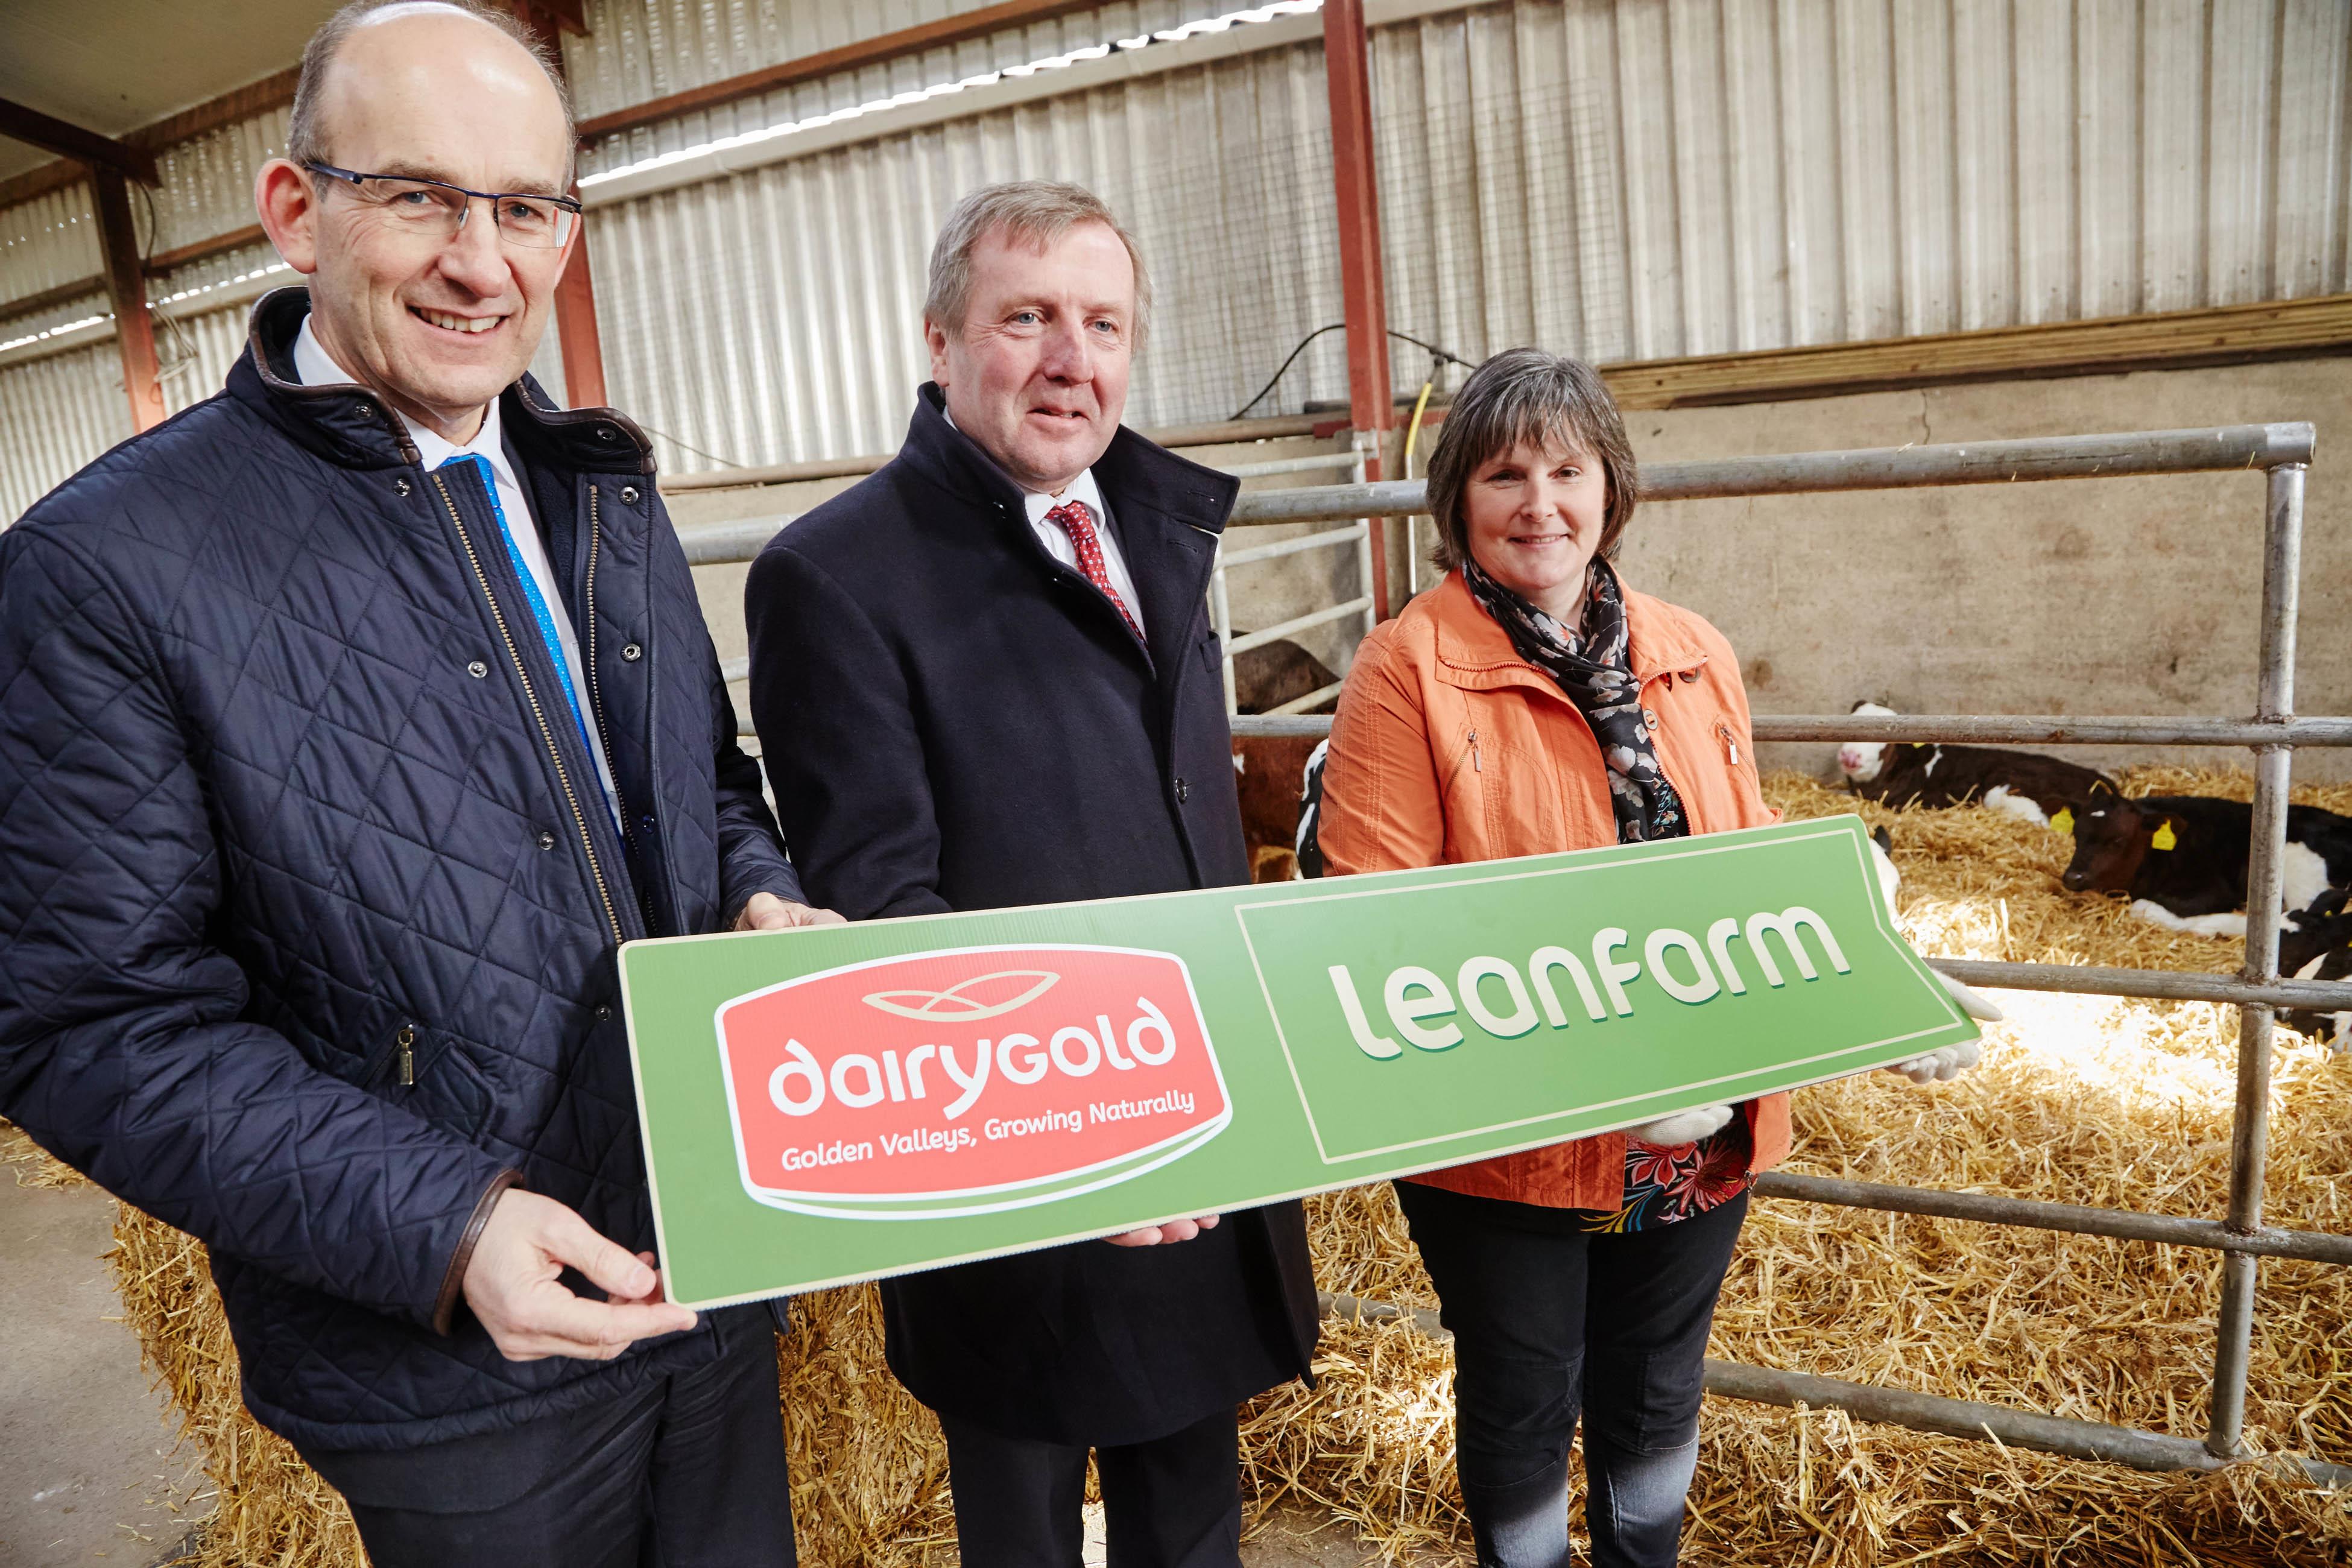 Dairygold launches Leanfarm